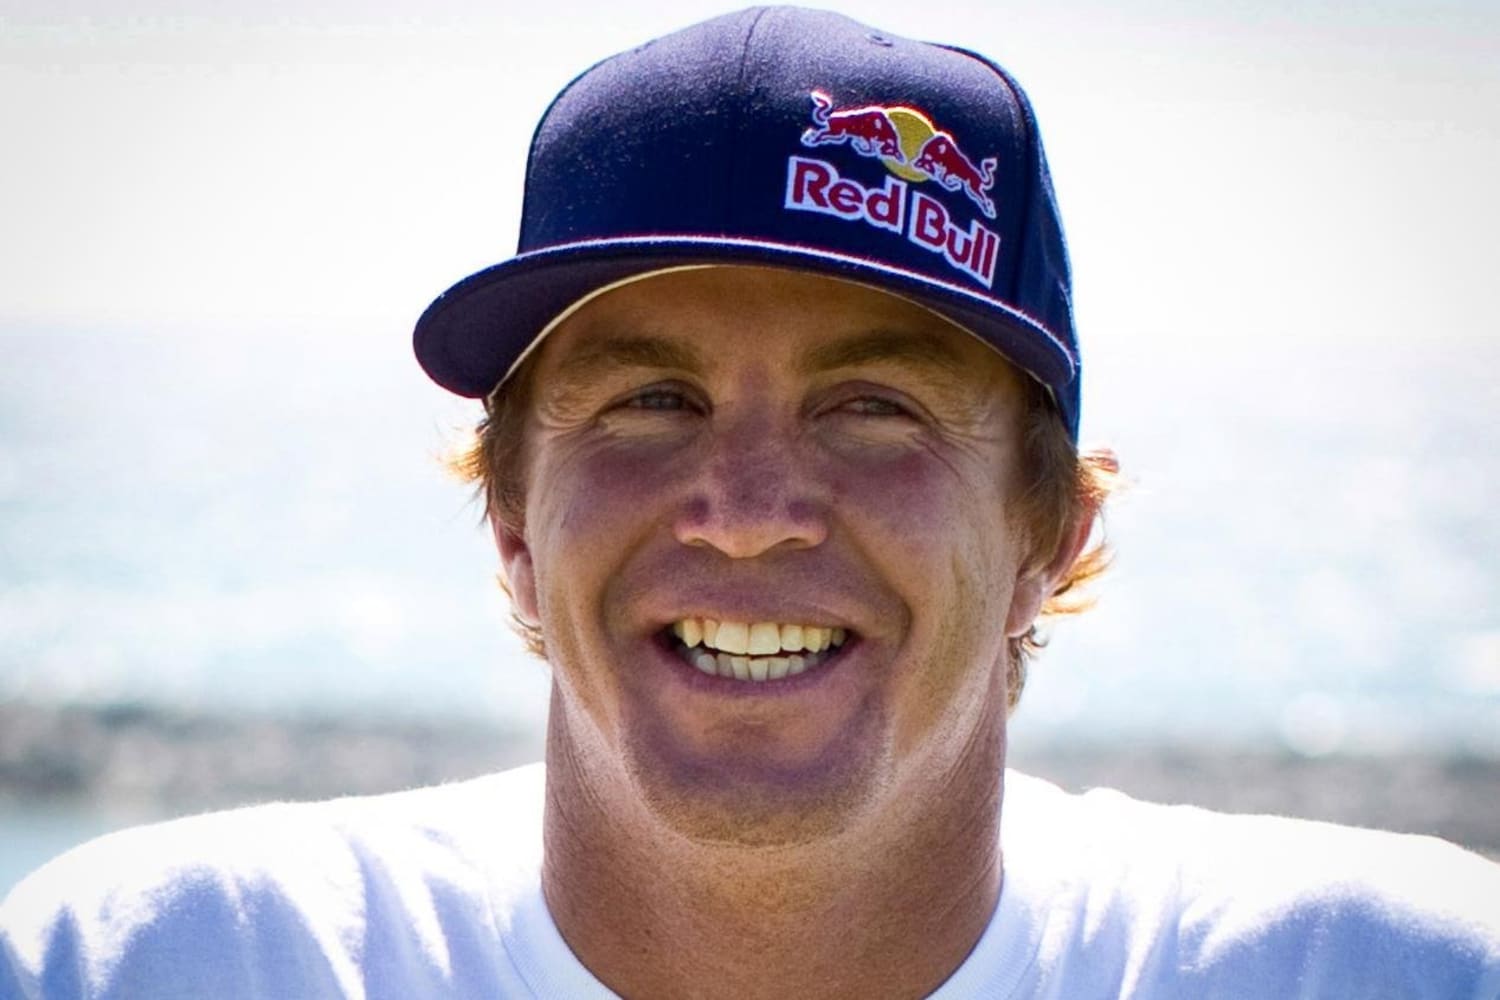 Jamie O'Brien: Surfing â Red Bull Athlete Profile